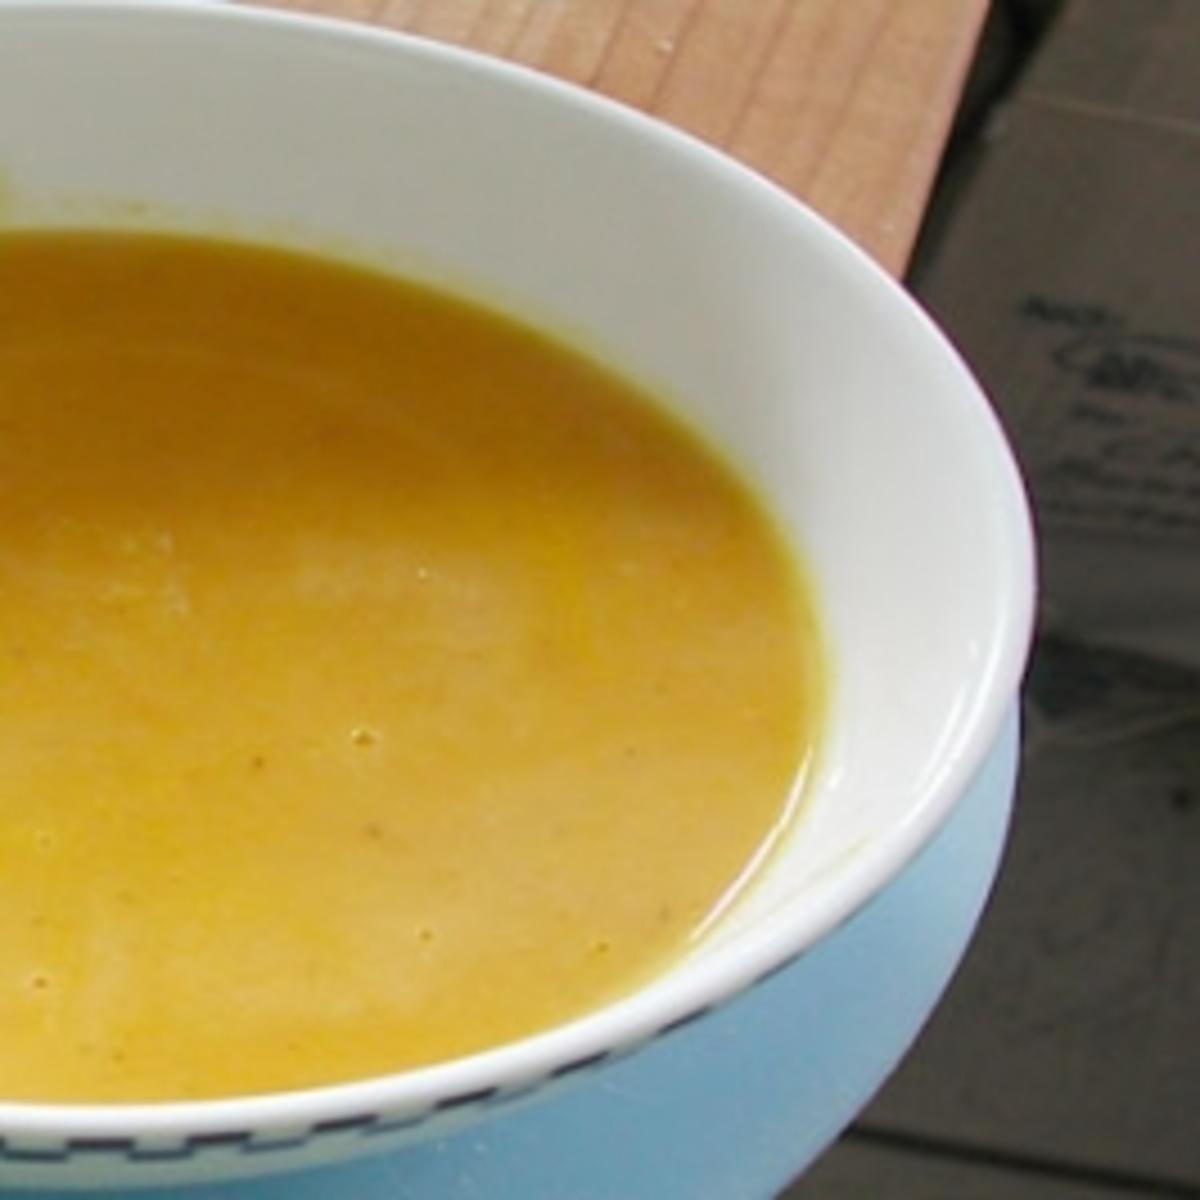 Feurige Karotten-Orangen-Ingwer Suppe - Rezept